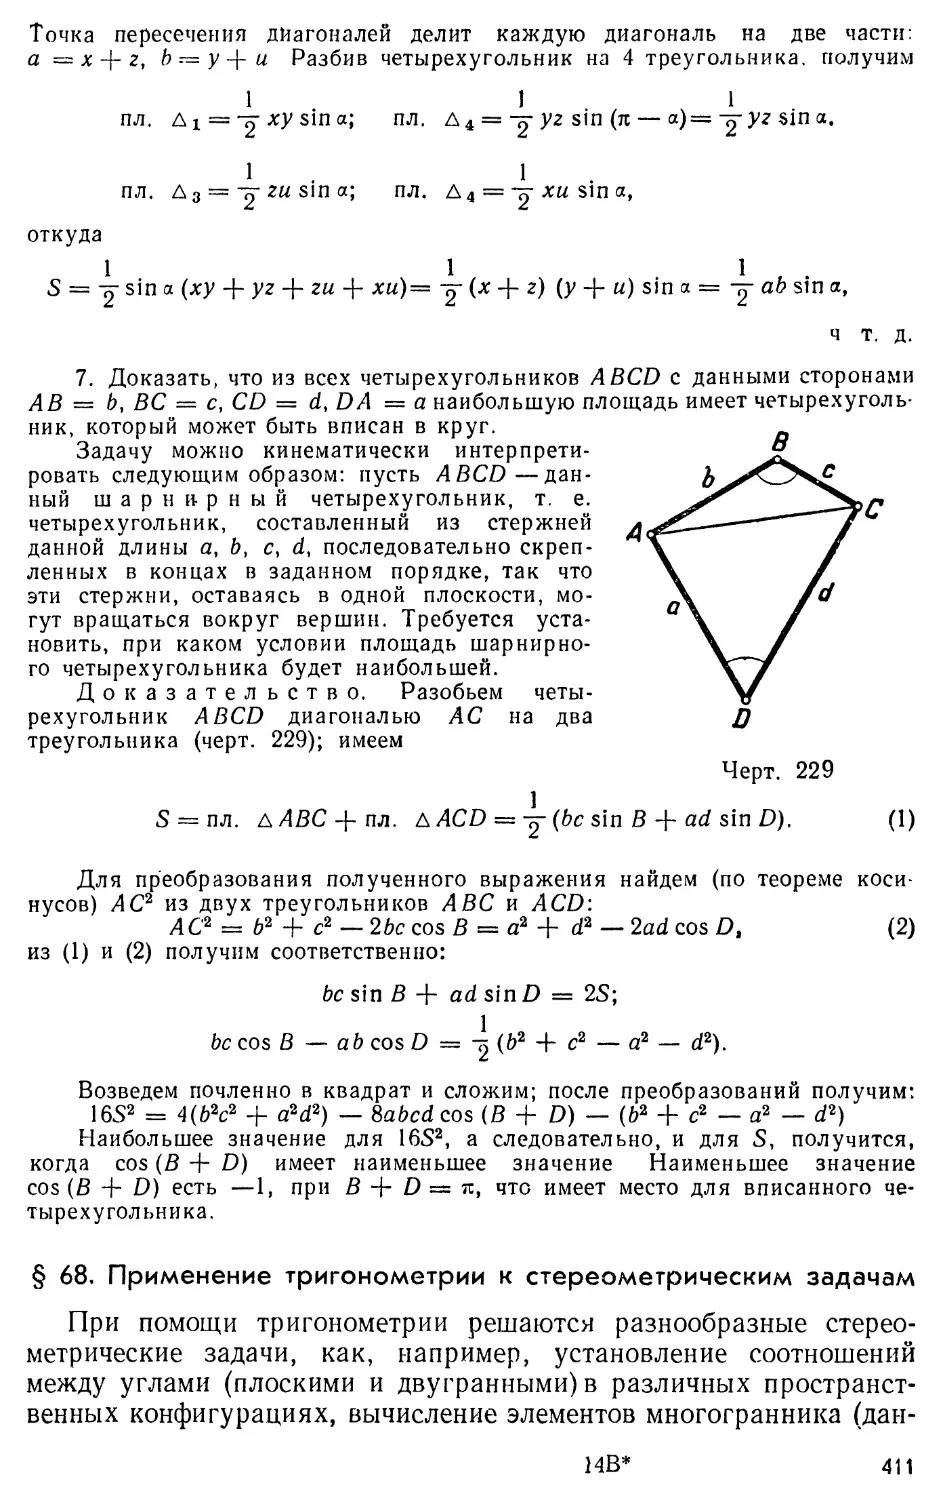 § 68.Применение тригонометрии к стереометрическим задачам